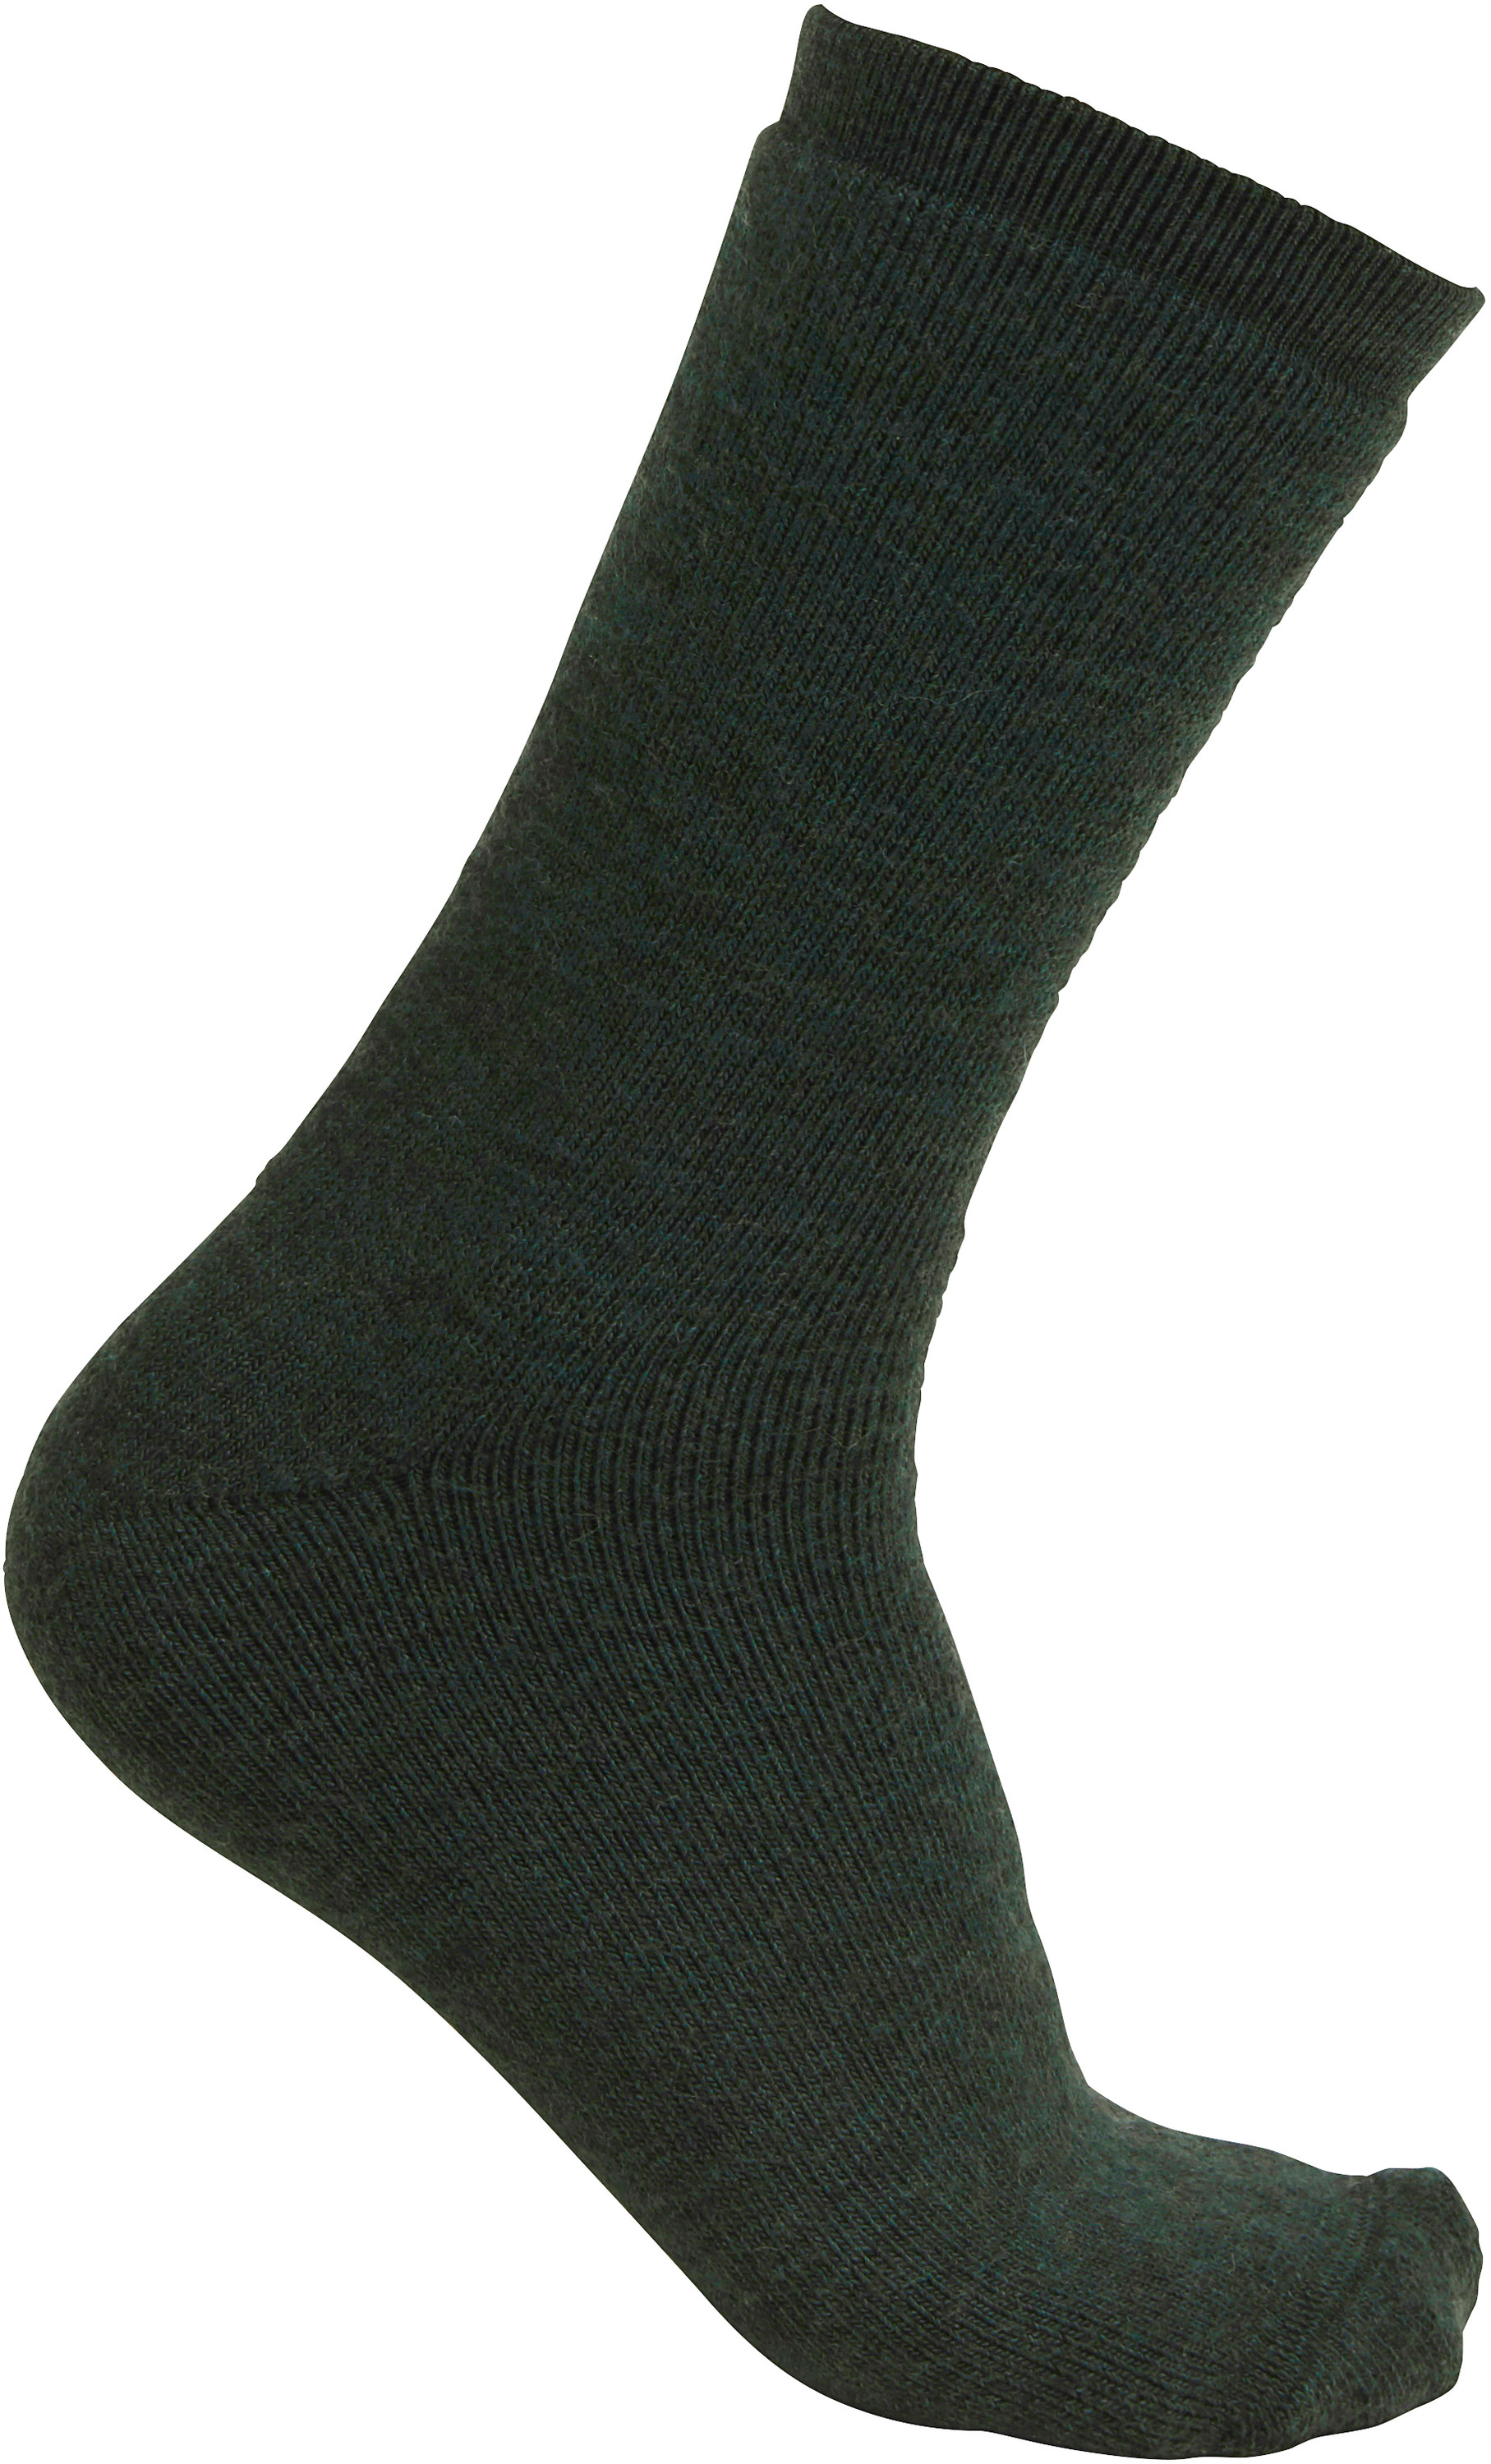 Socks 400 - Forest Green